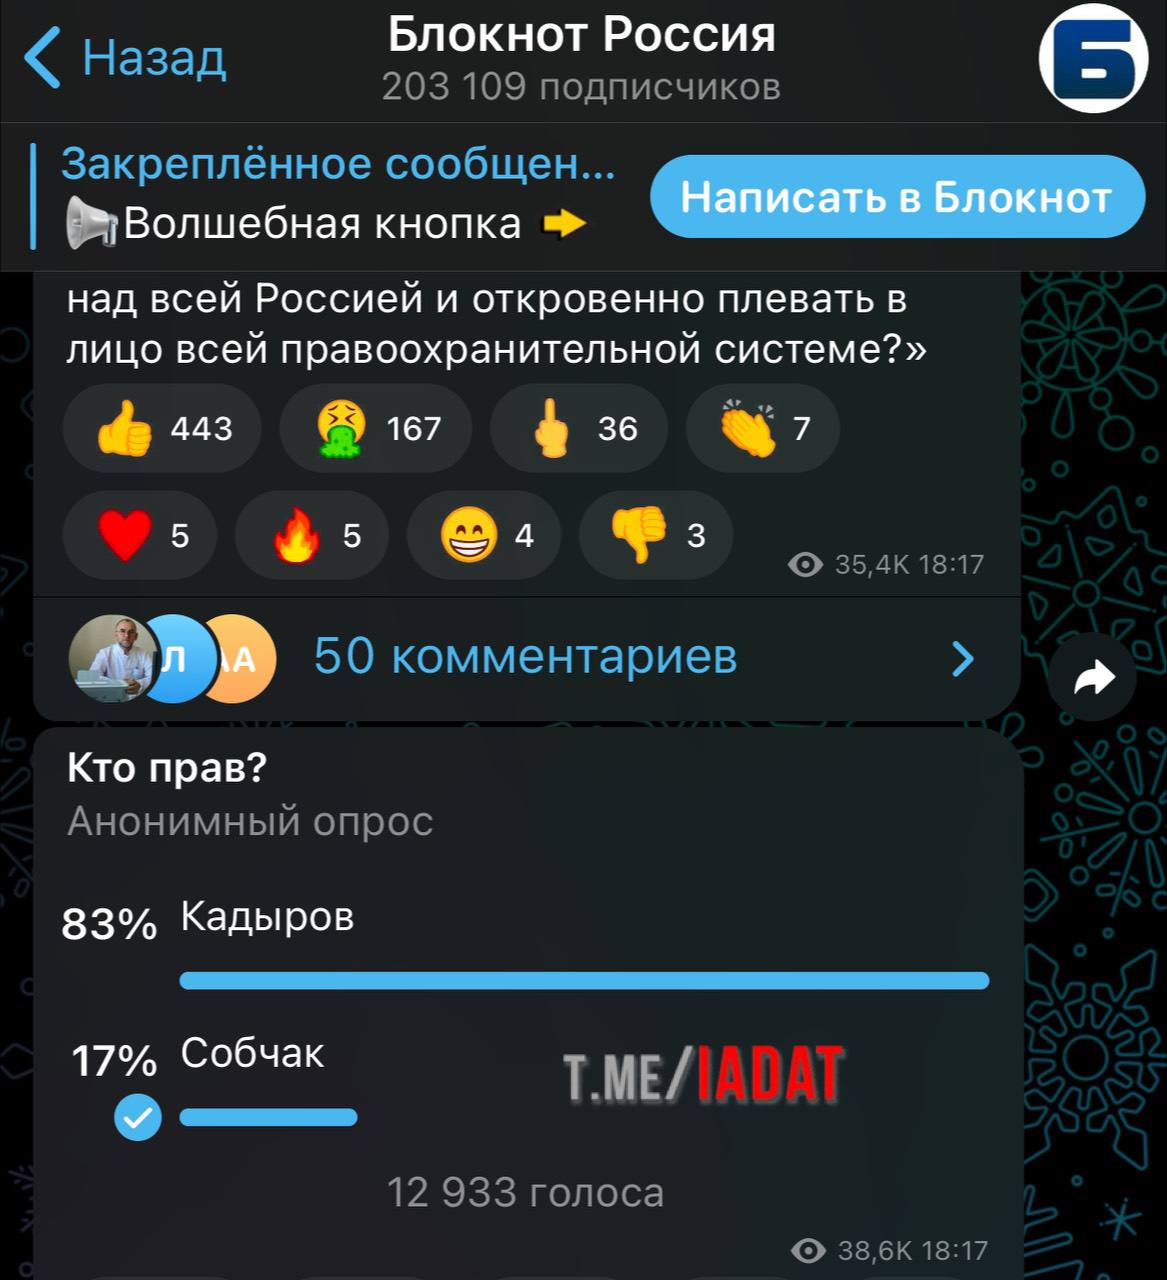 Скачать приложение телеграмм на русском бесплатно на телефон без регистрации фото 111